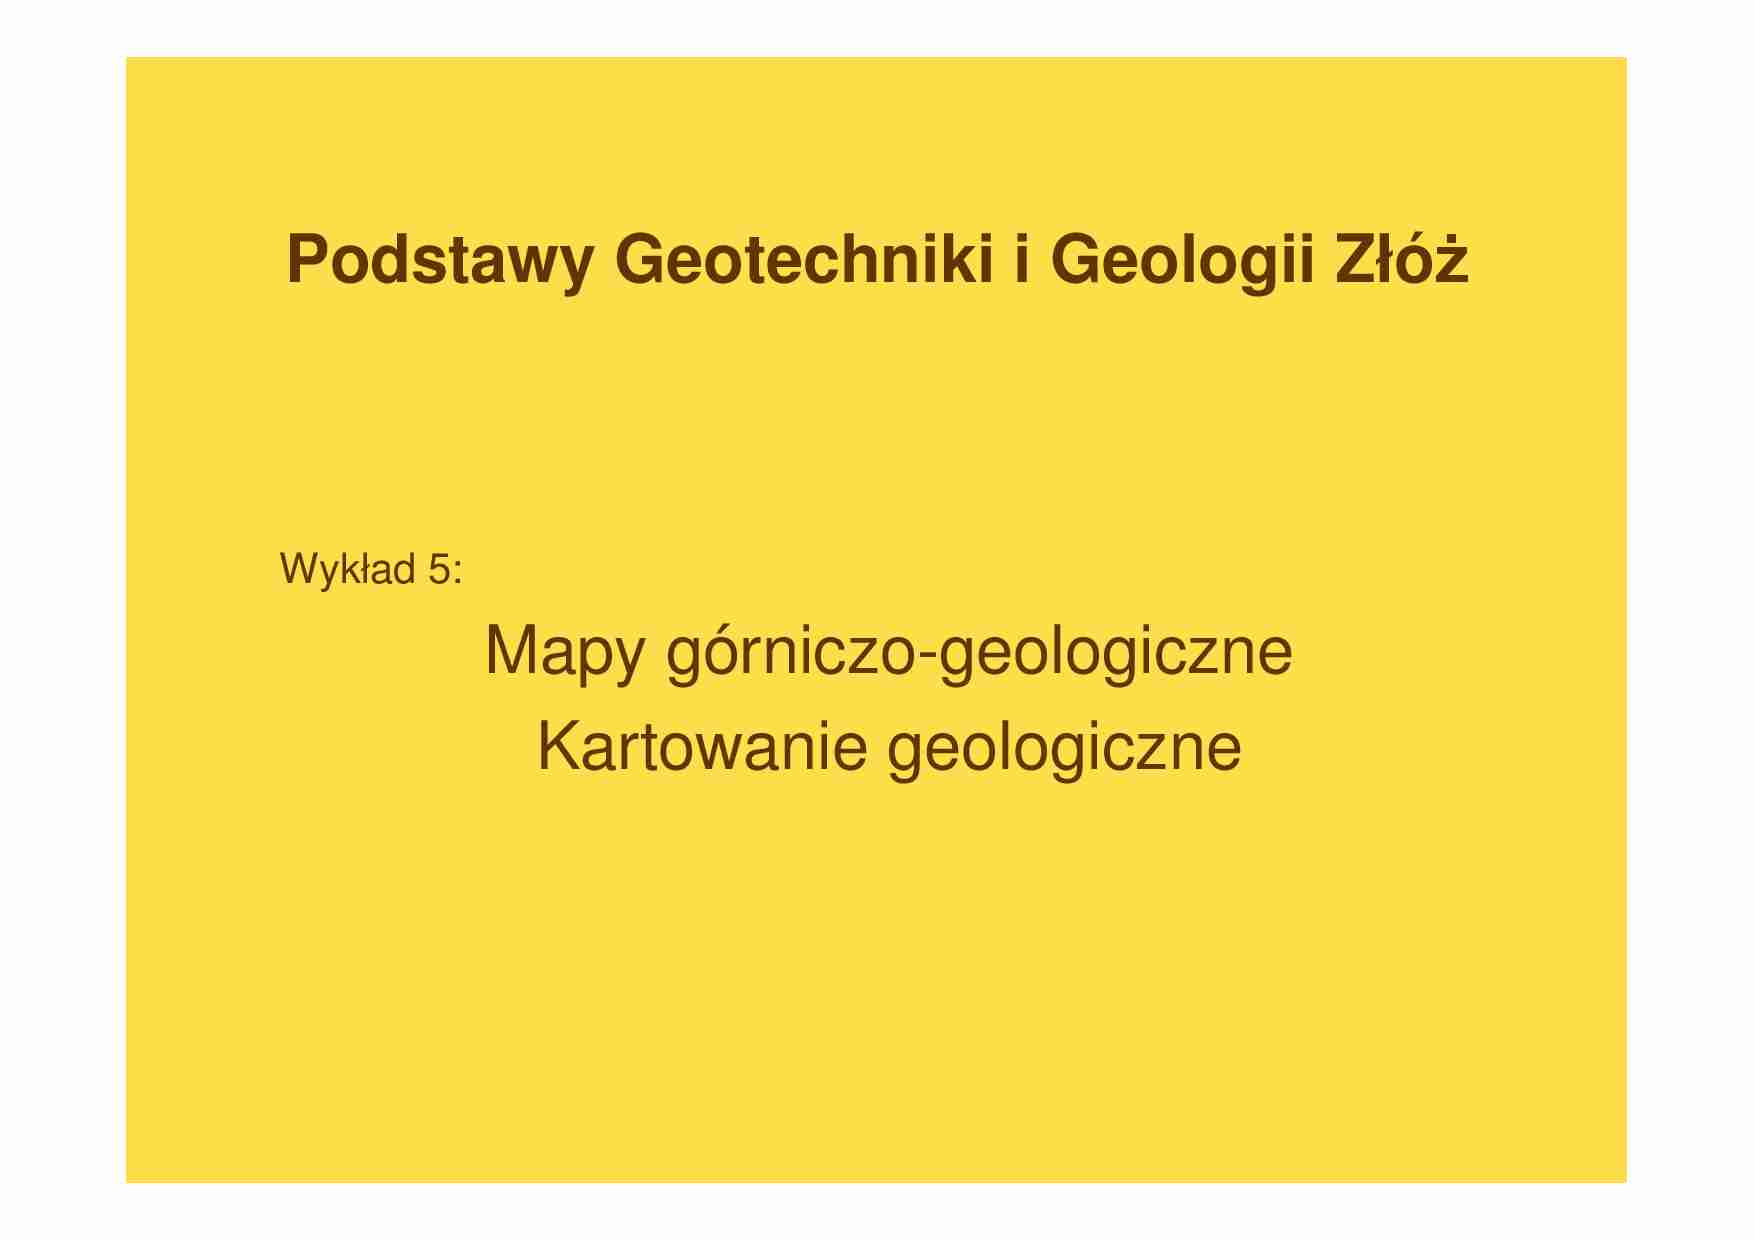 Podstawy geotechniki i geologii złóż - Mapy górniczo-geologiczne  - strona 1